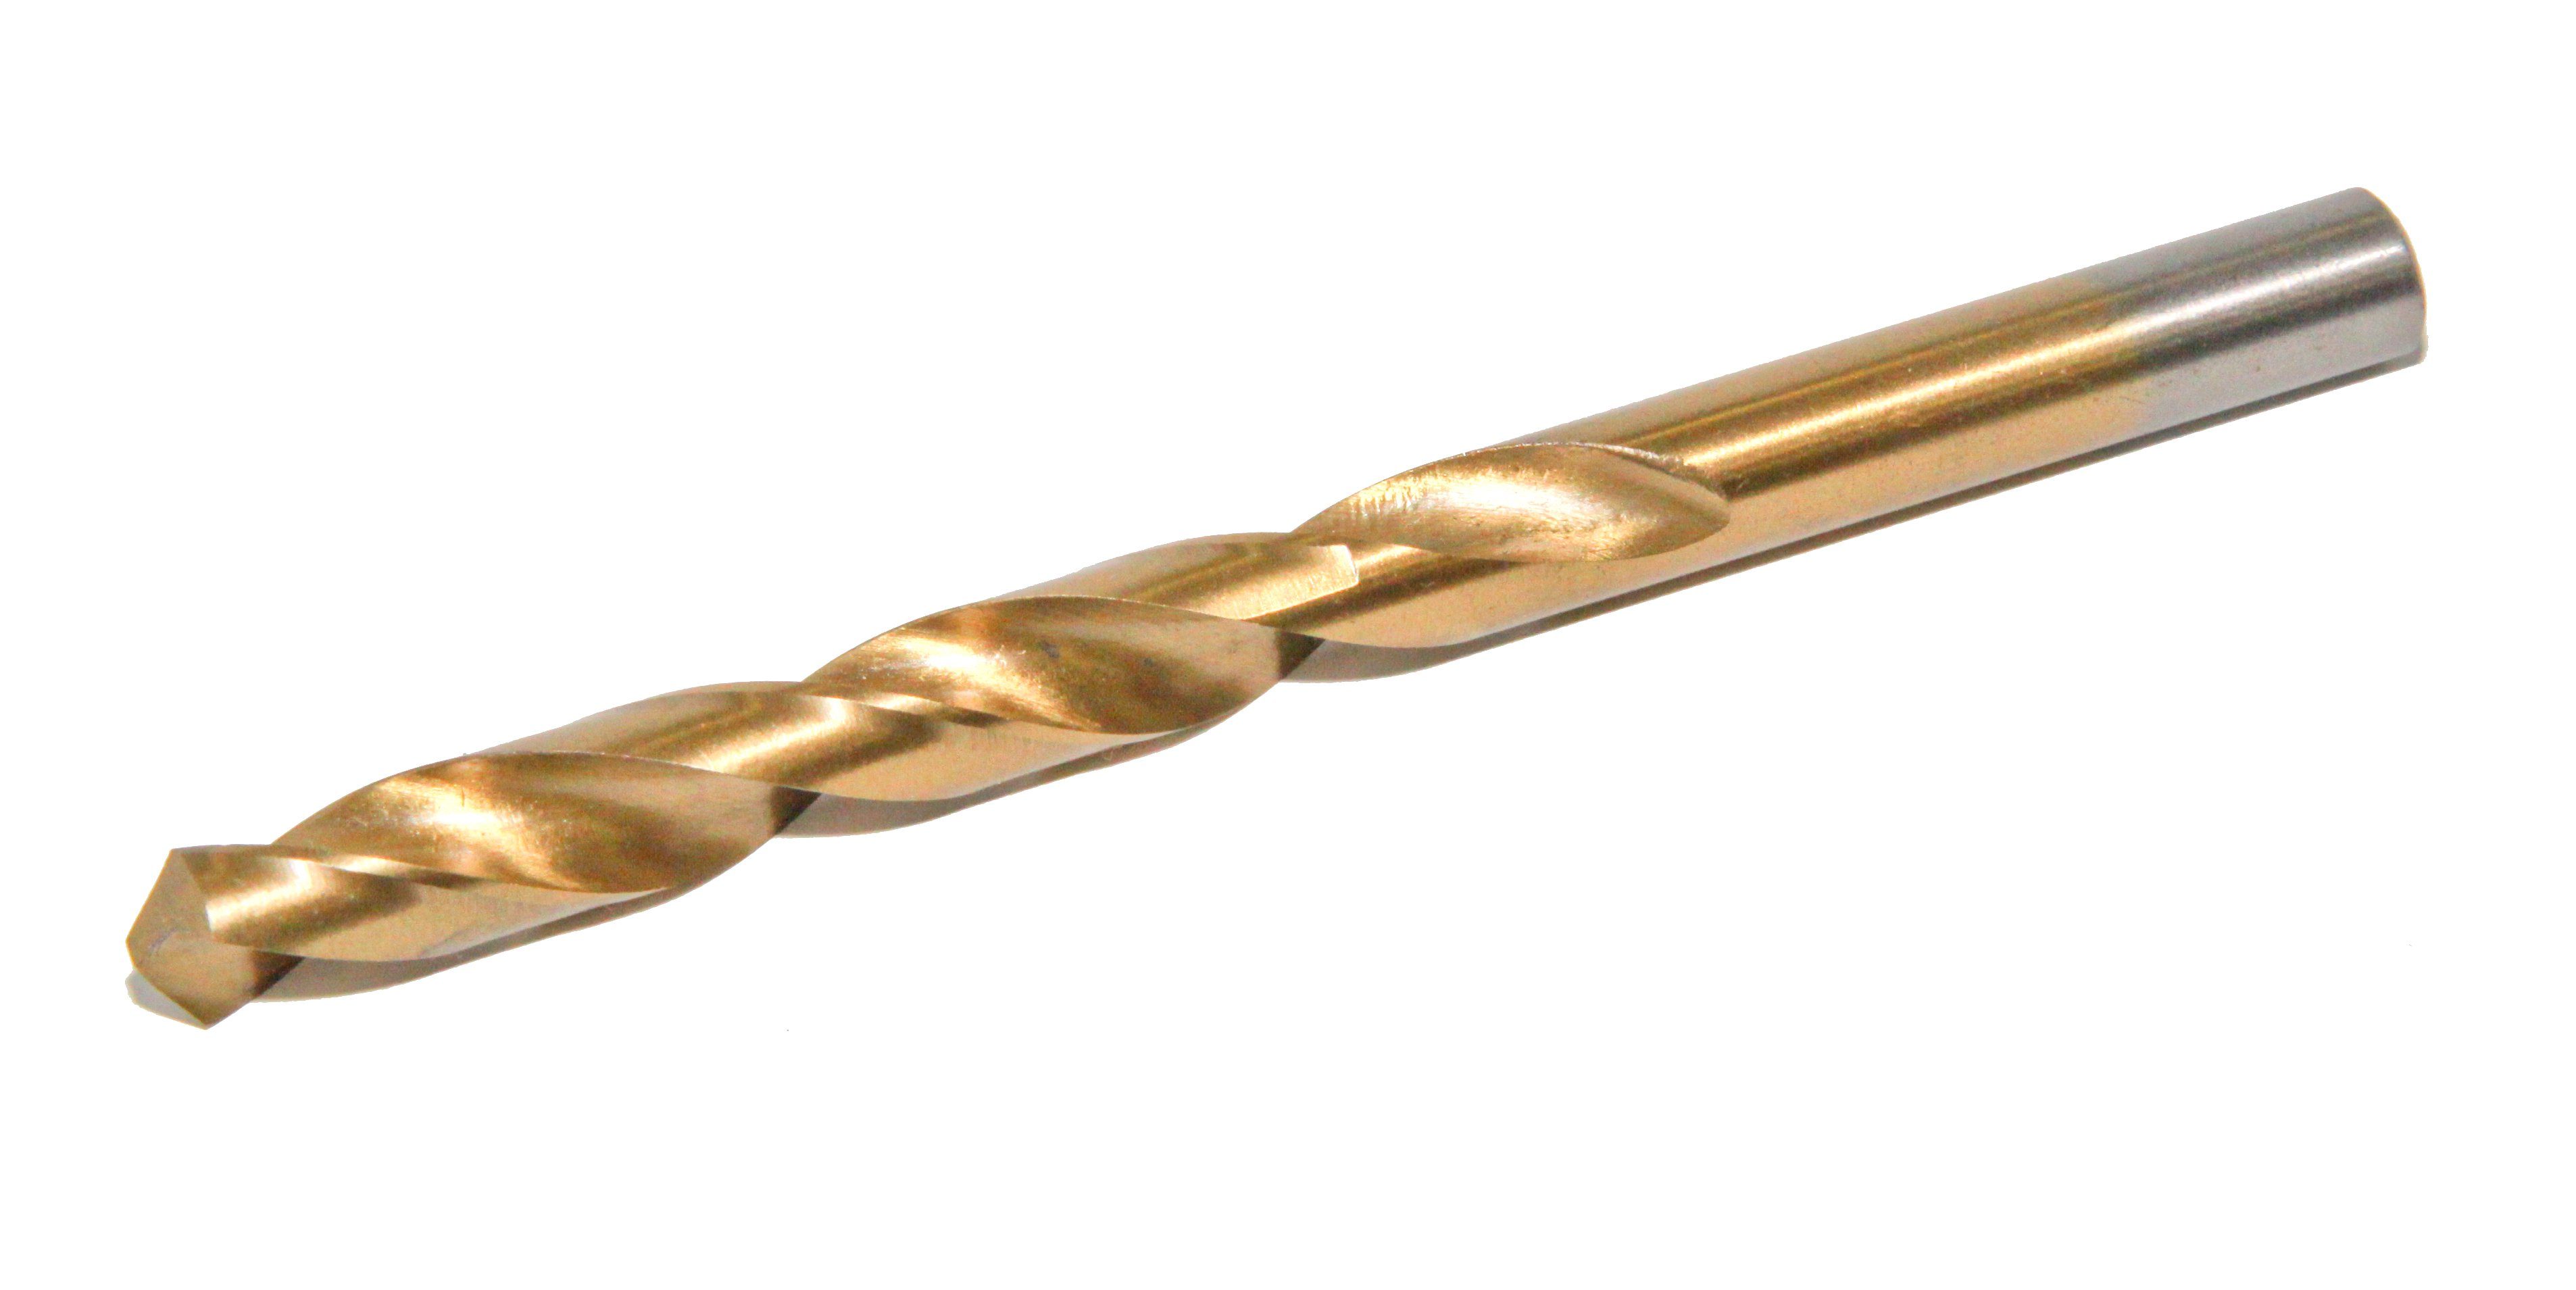 Metallbohrer Metallbohrer, tlg. (TiN) TiN (500) 170 Qualität, Set EG HSS-R (1-10mm) (170-tlg), TITAN Spiralbohrer HSS-R PeTools titannitridbeschichtet